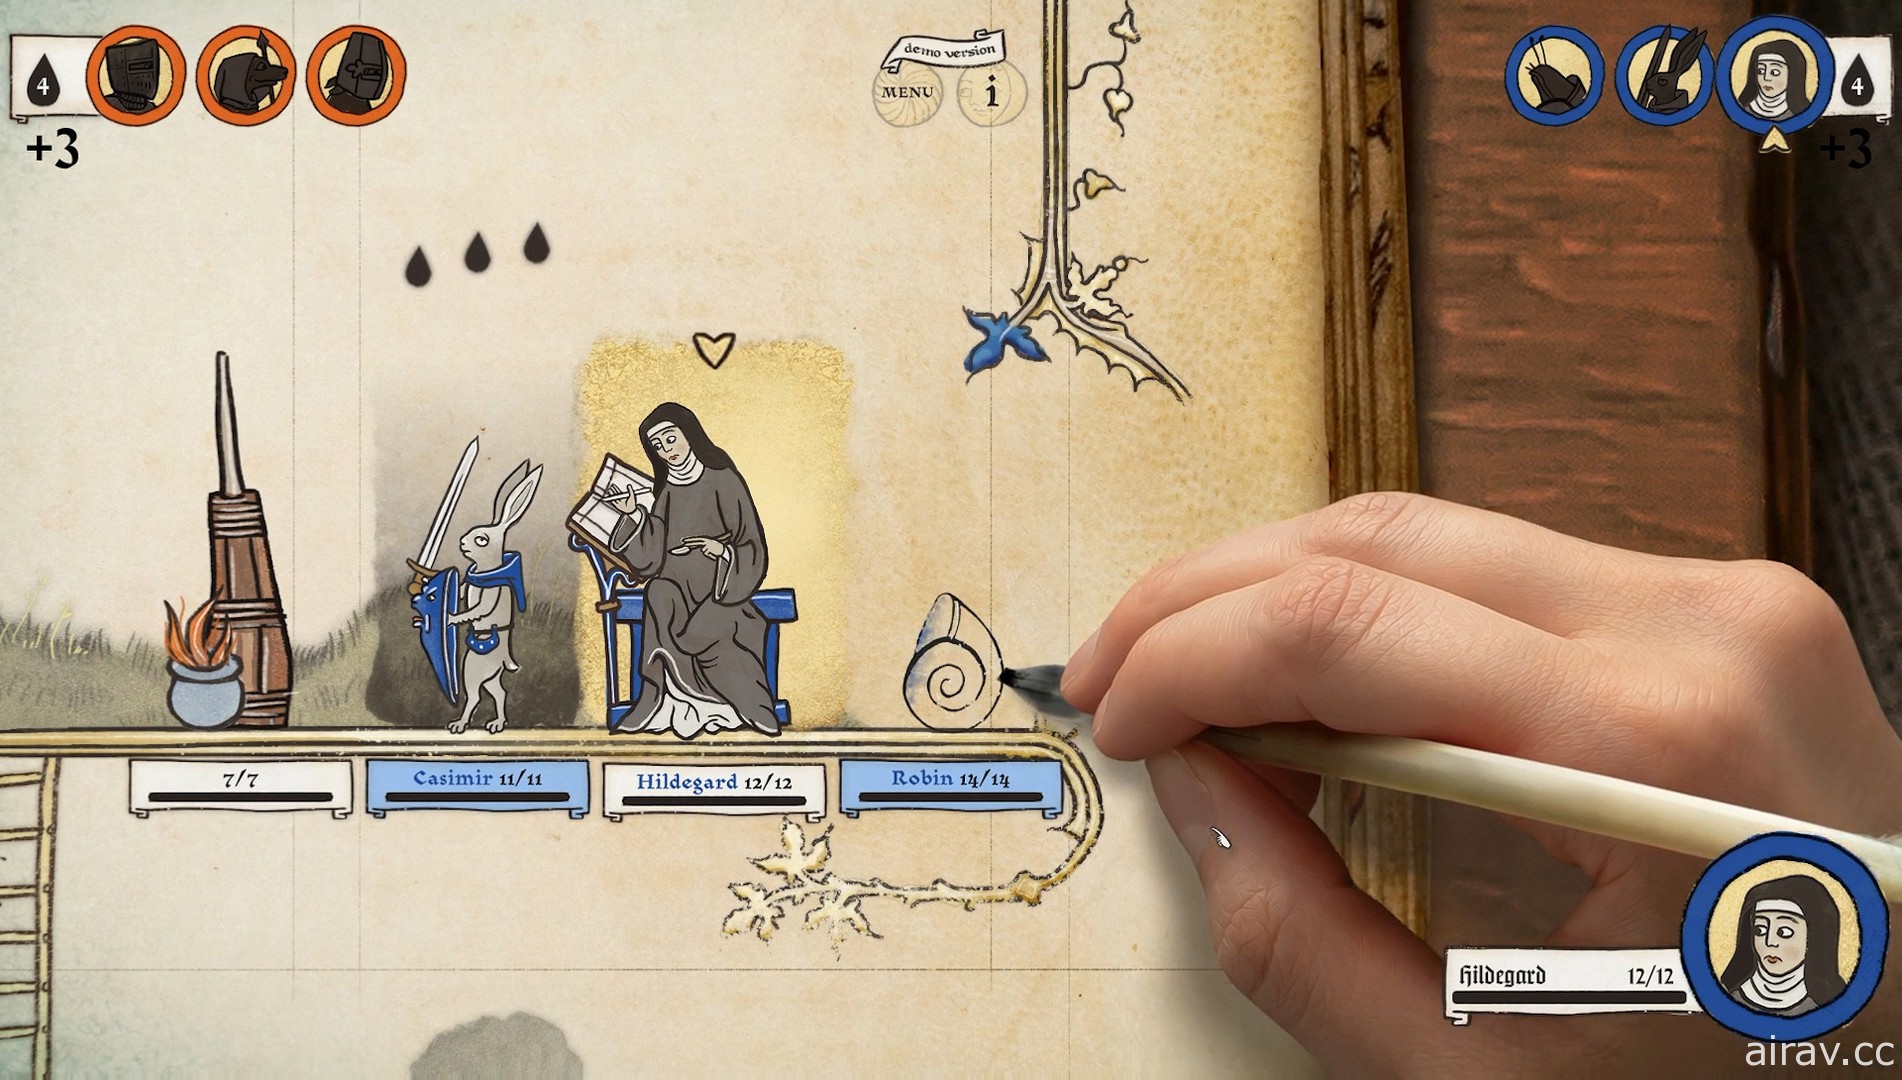 中世纪手稿笔墨策略游戏《神笔谈兵》释出最新宣传影片 活用墨水击败敌人